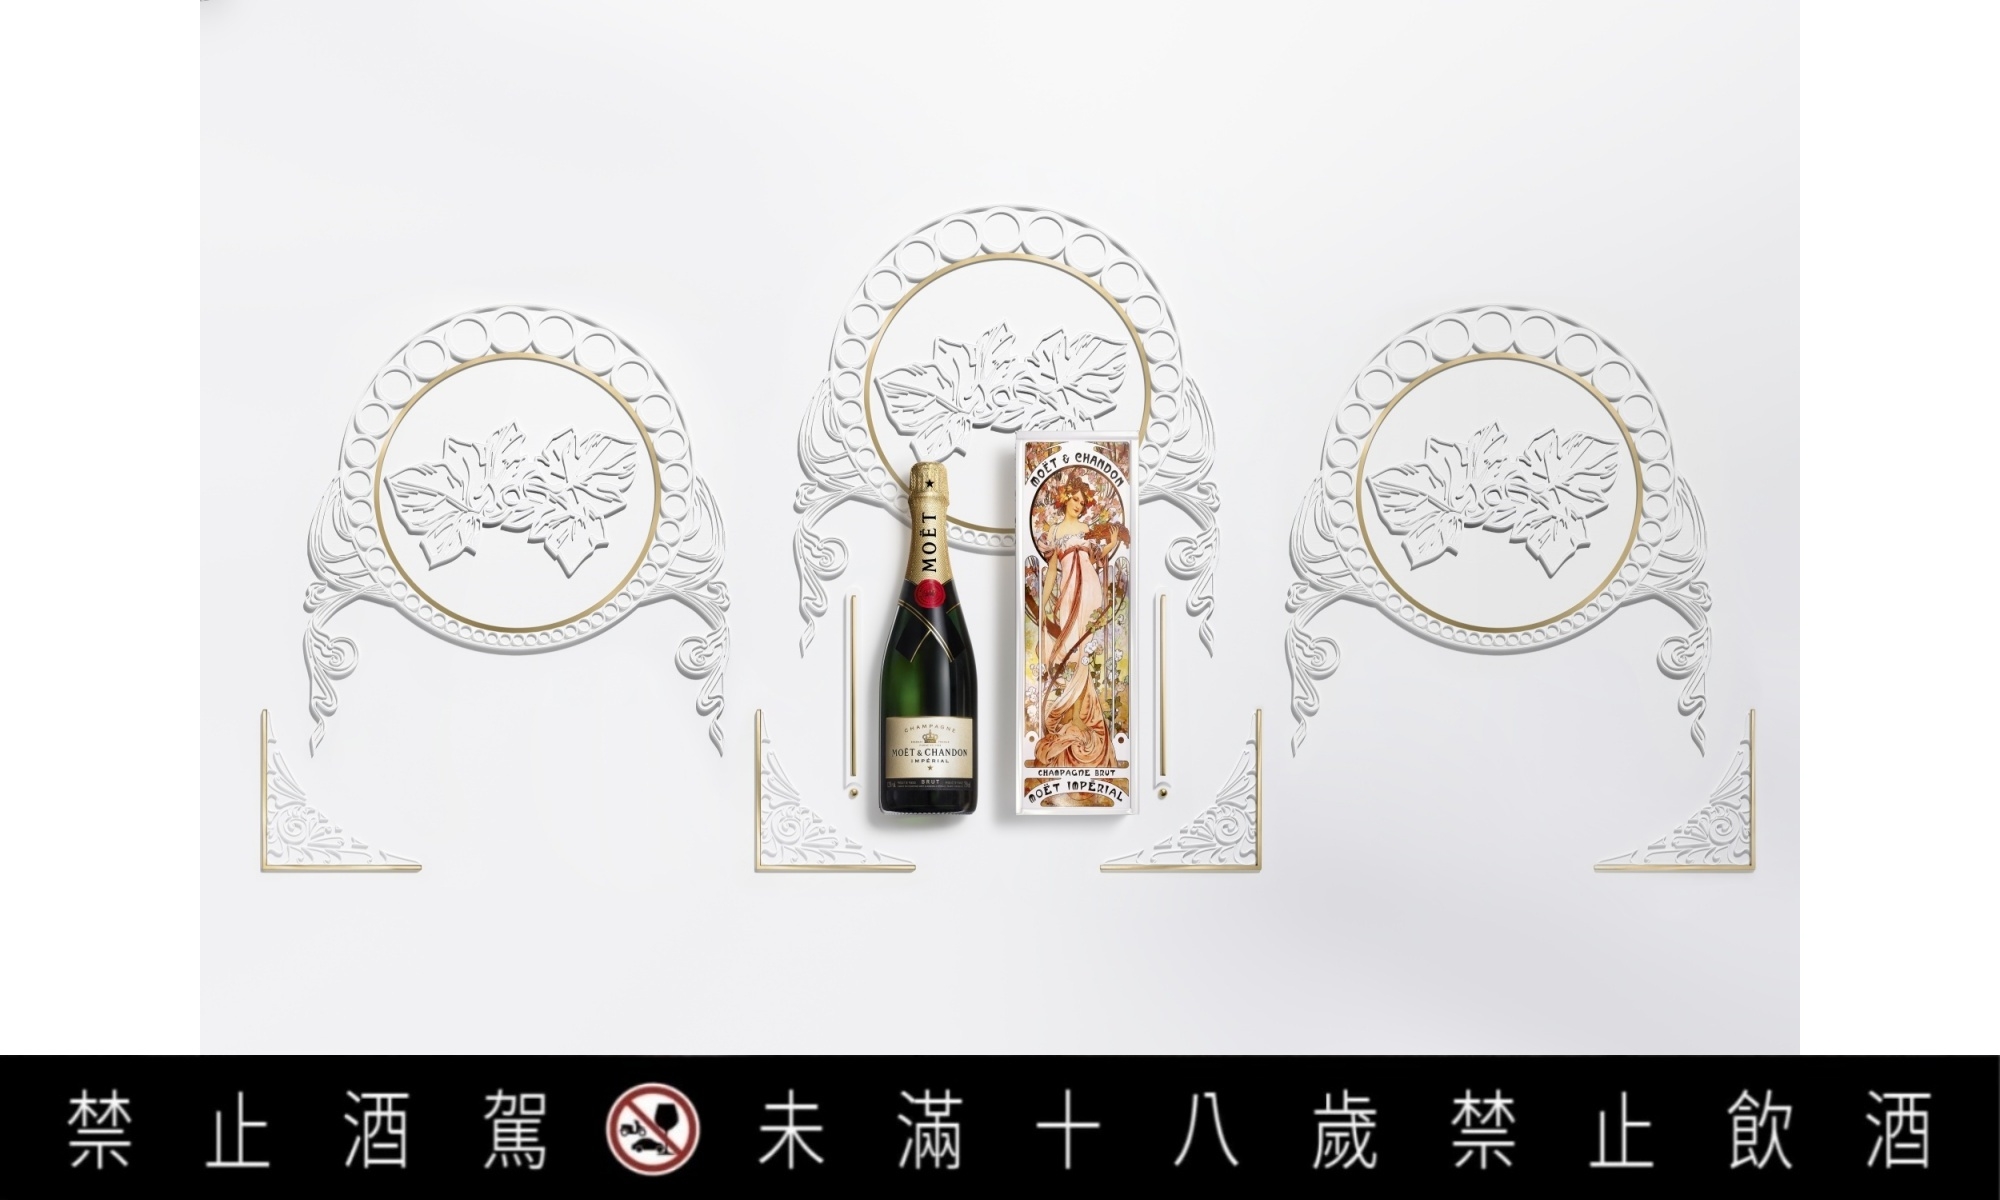 歡慶酩悅香檳280週年，推出「慕夏限量版禮盒」向歷史致敬